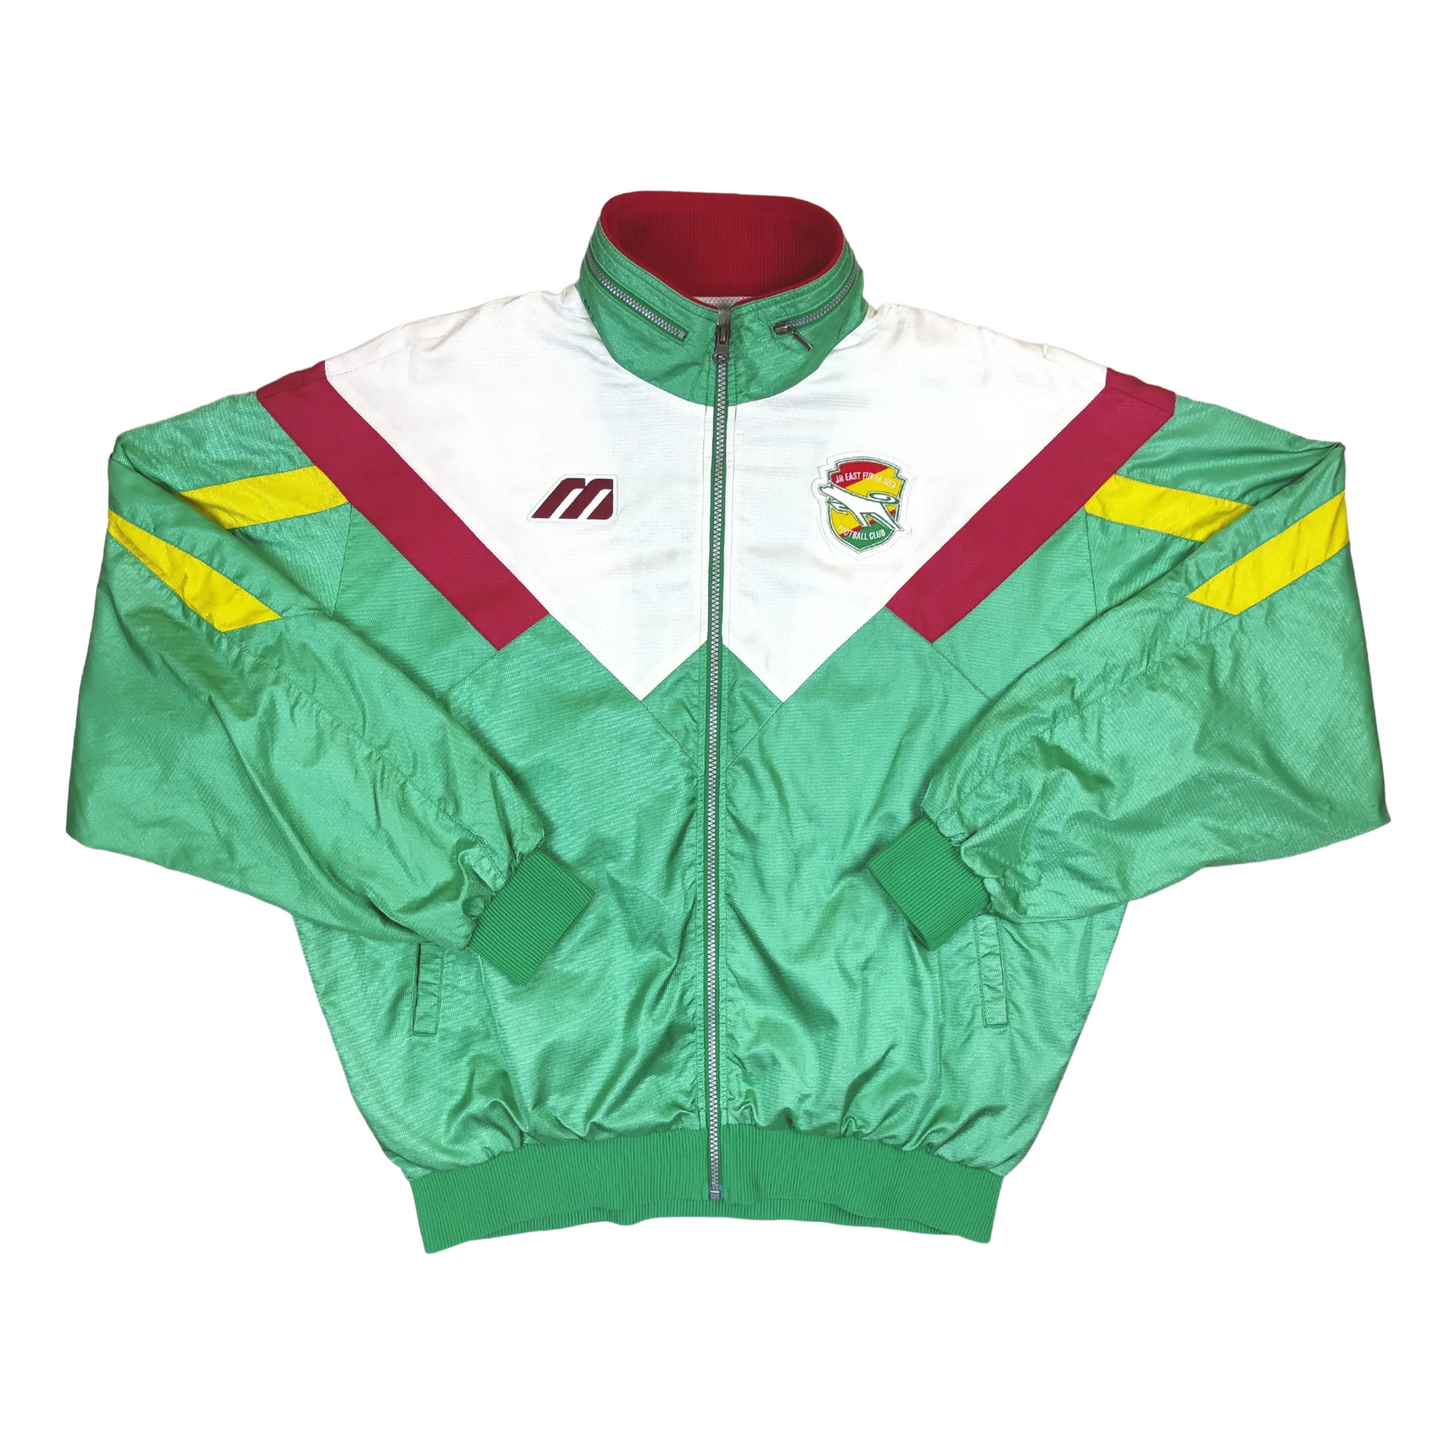 Jef United Track Jacket 1993-1994 (XL)